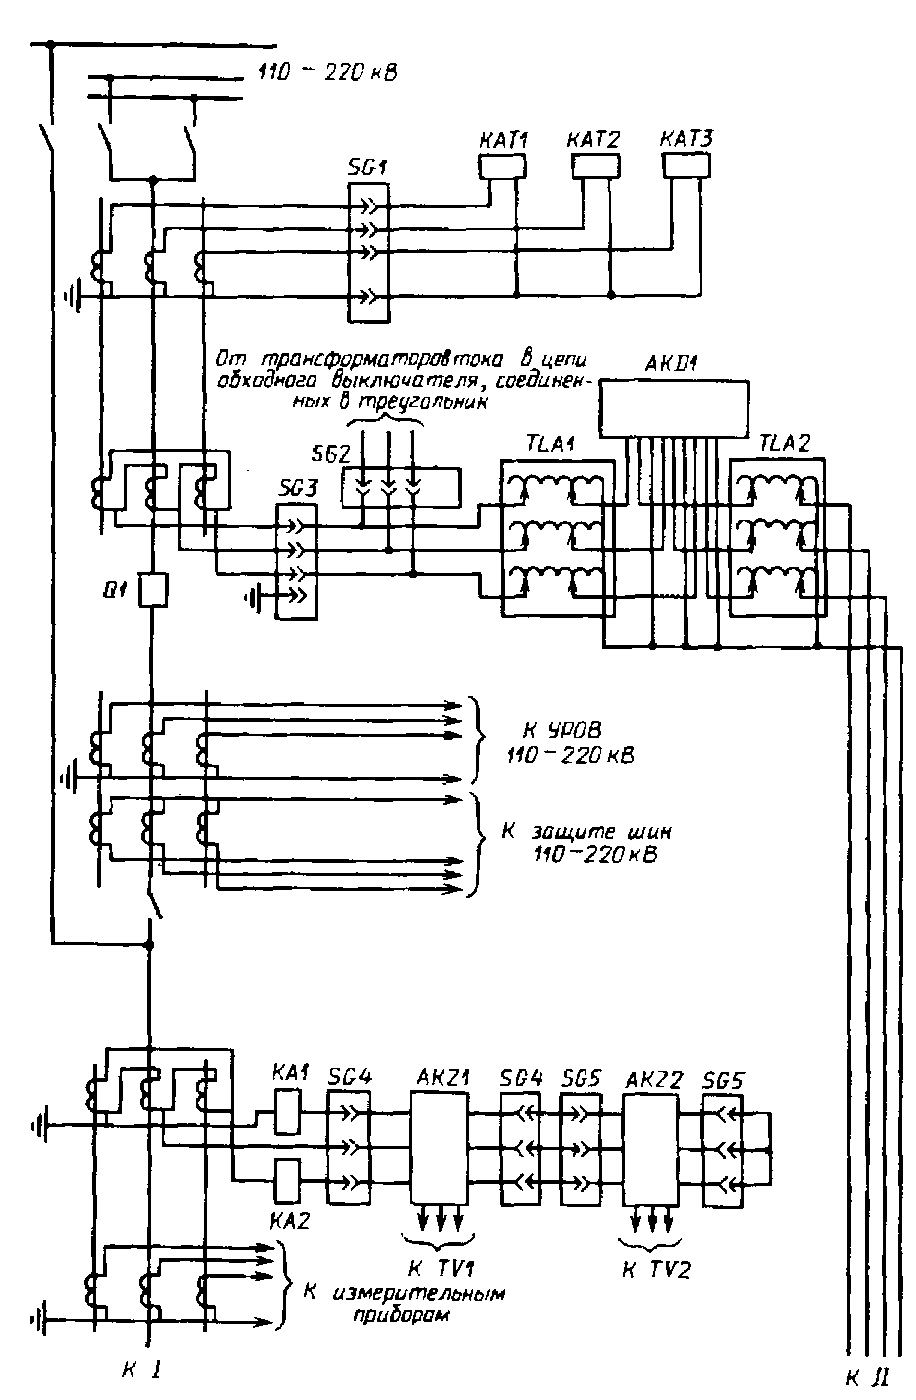 Схема зашиты резервного трансформатора с расщепленными обмотками